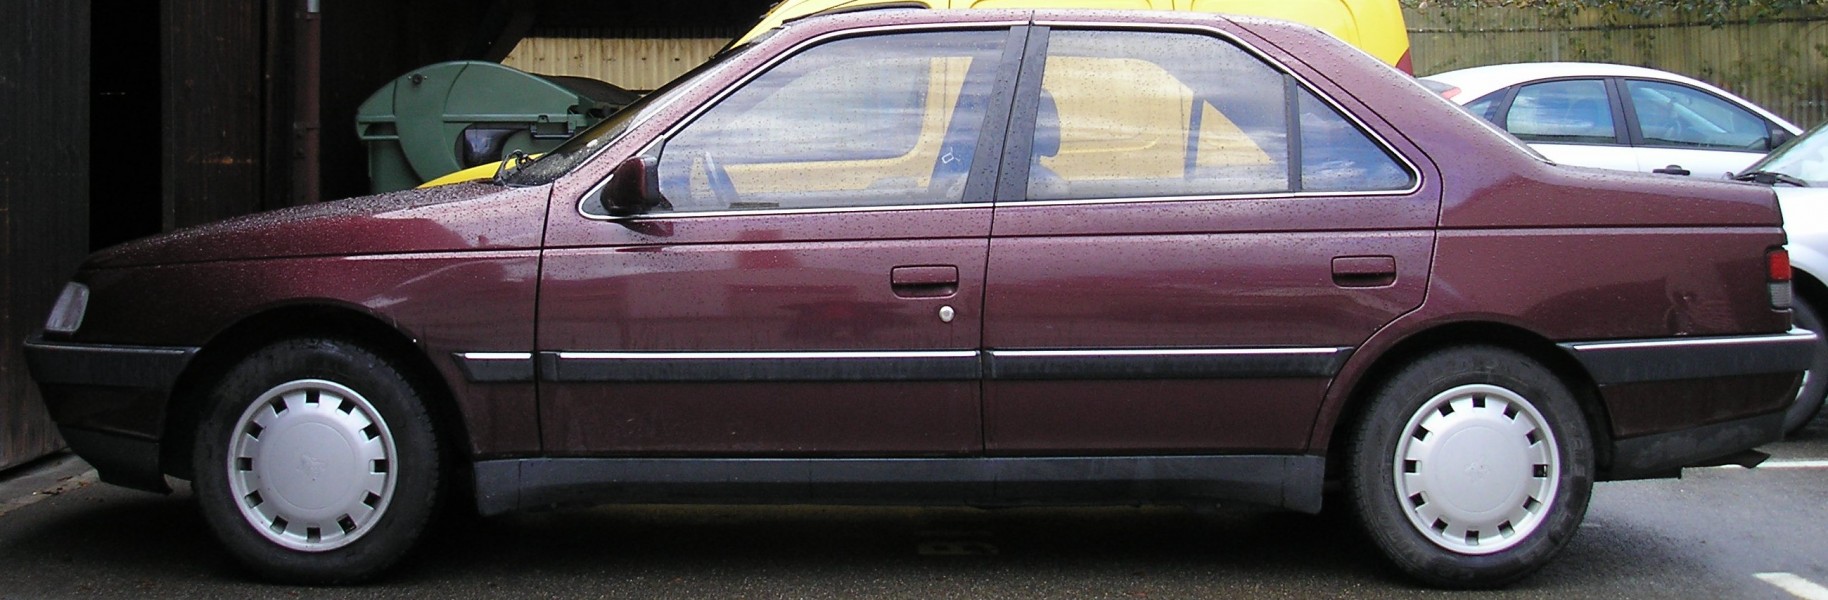 Peugeot 405 rouge side